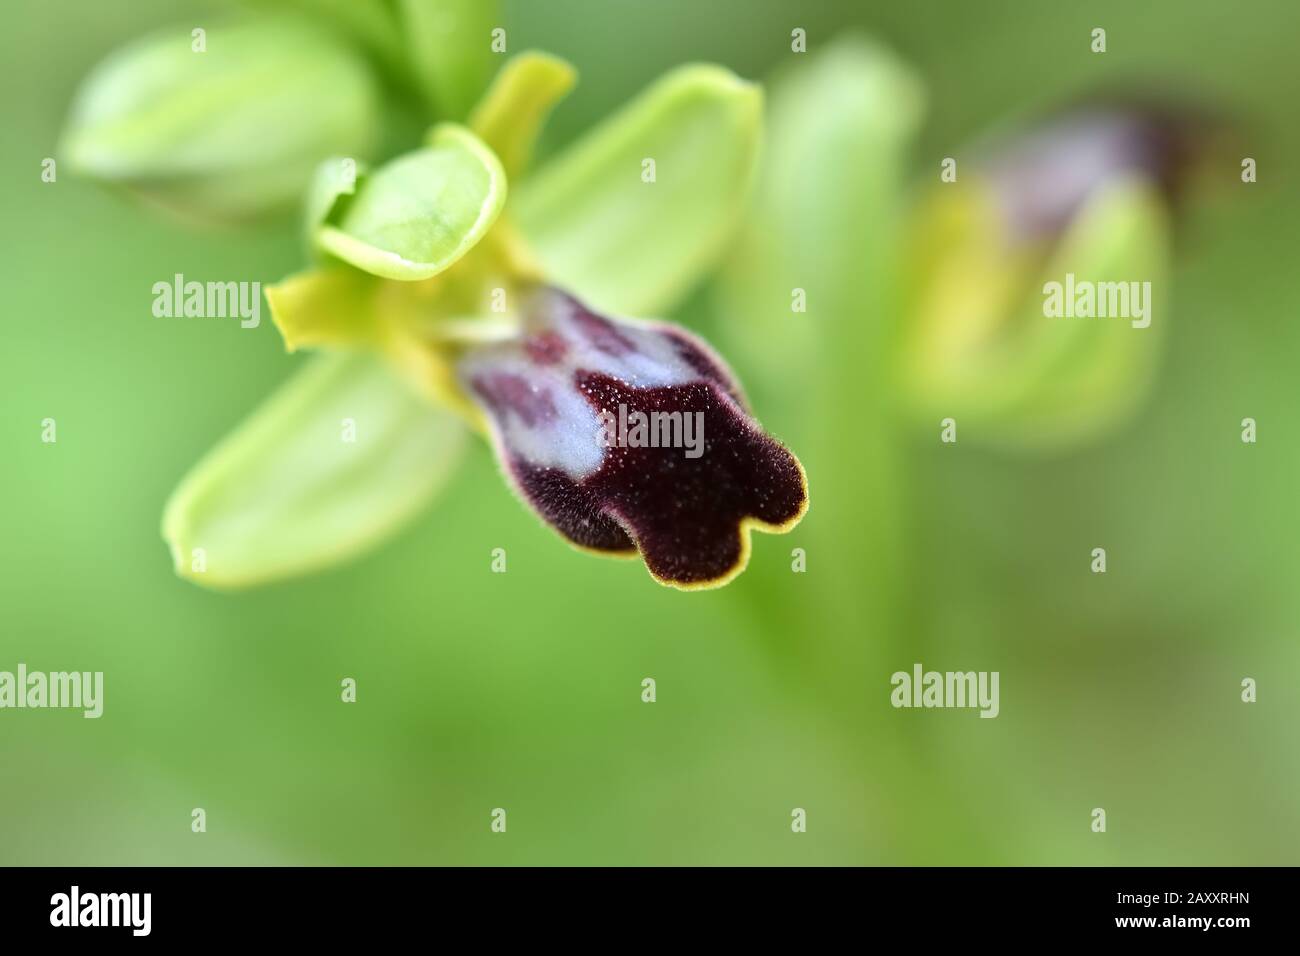 Détail de la petite orchidée sauvage violette sur fond vert Photo Stock -  Alamy